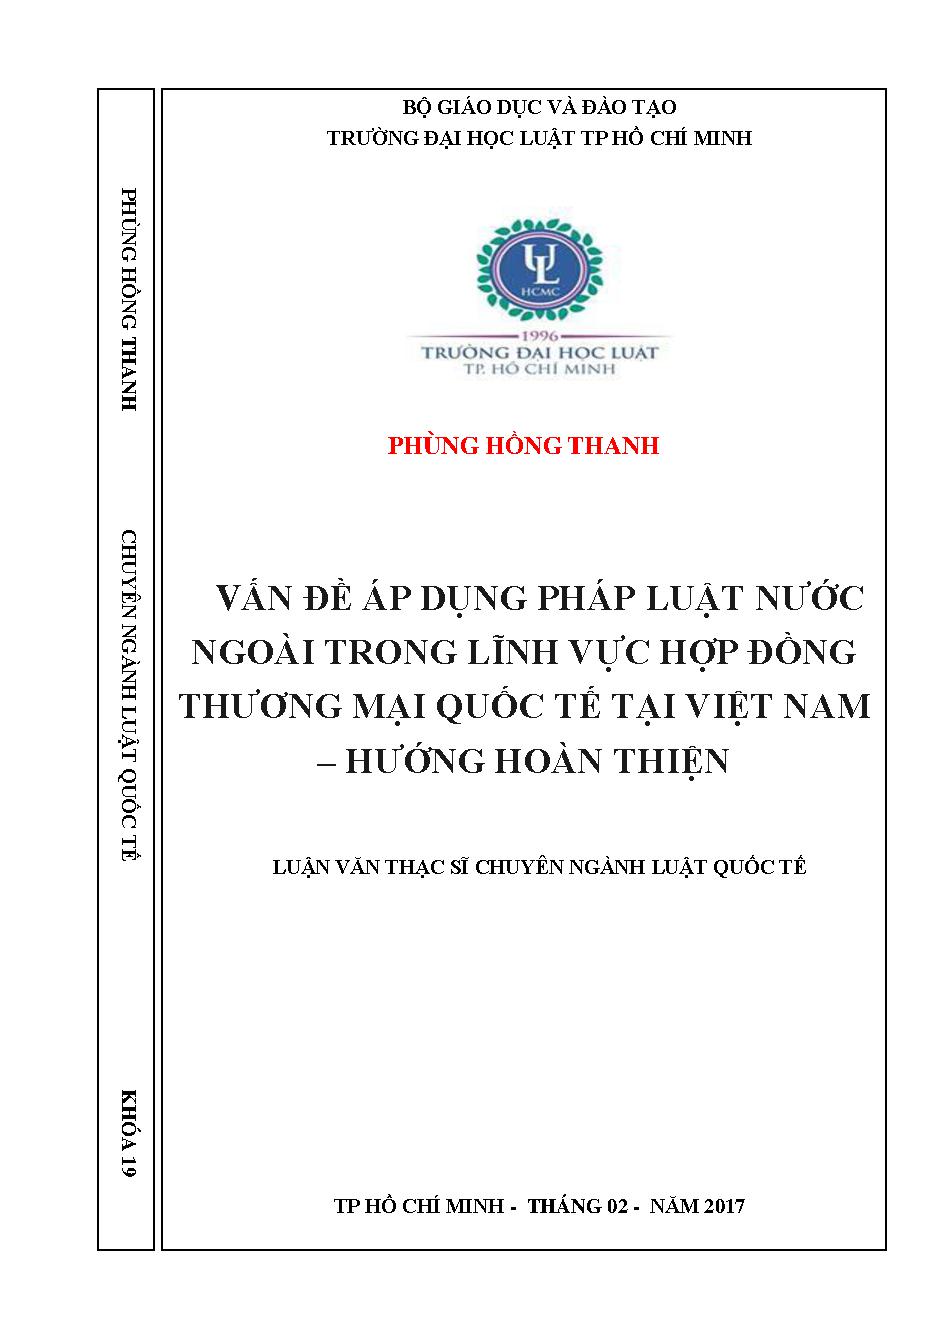 Vấn đề áp dụng pháp luật nước ngoài trong lĩnh vực hợp đồng thương mại quốc tế tại Việt Nam - Hướng hoàn thiện